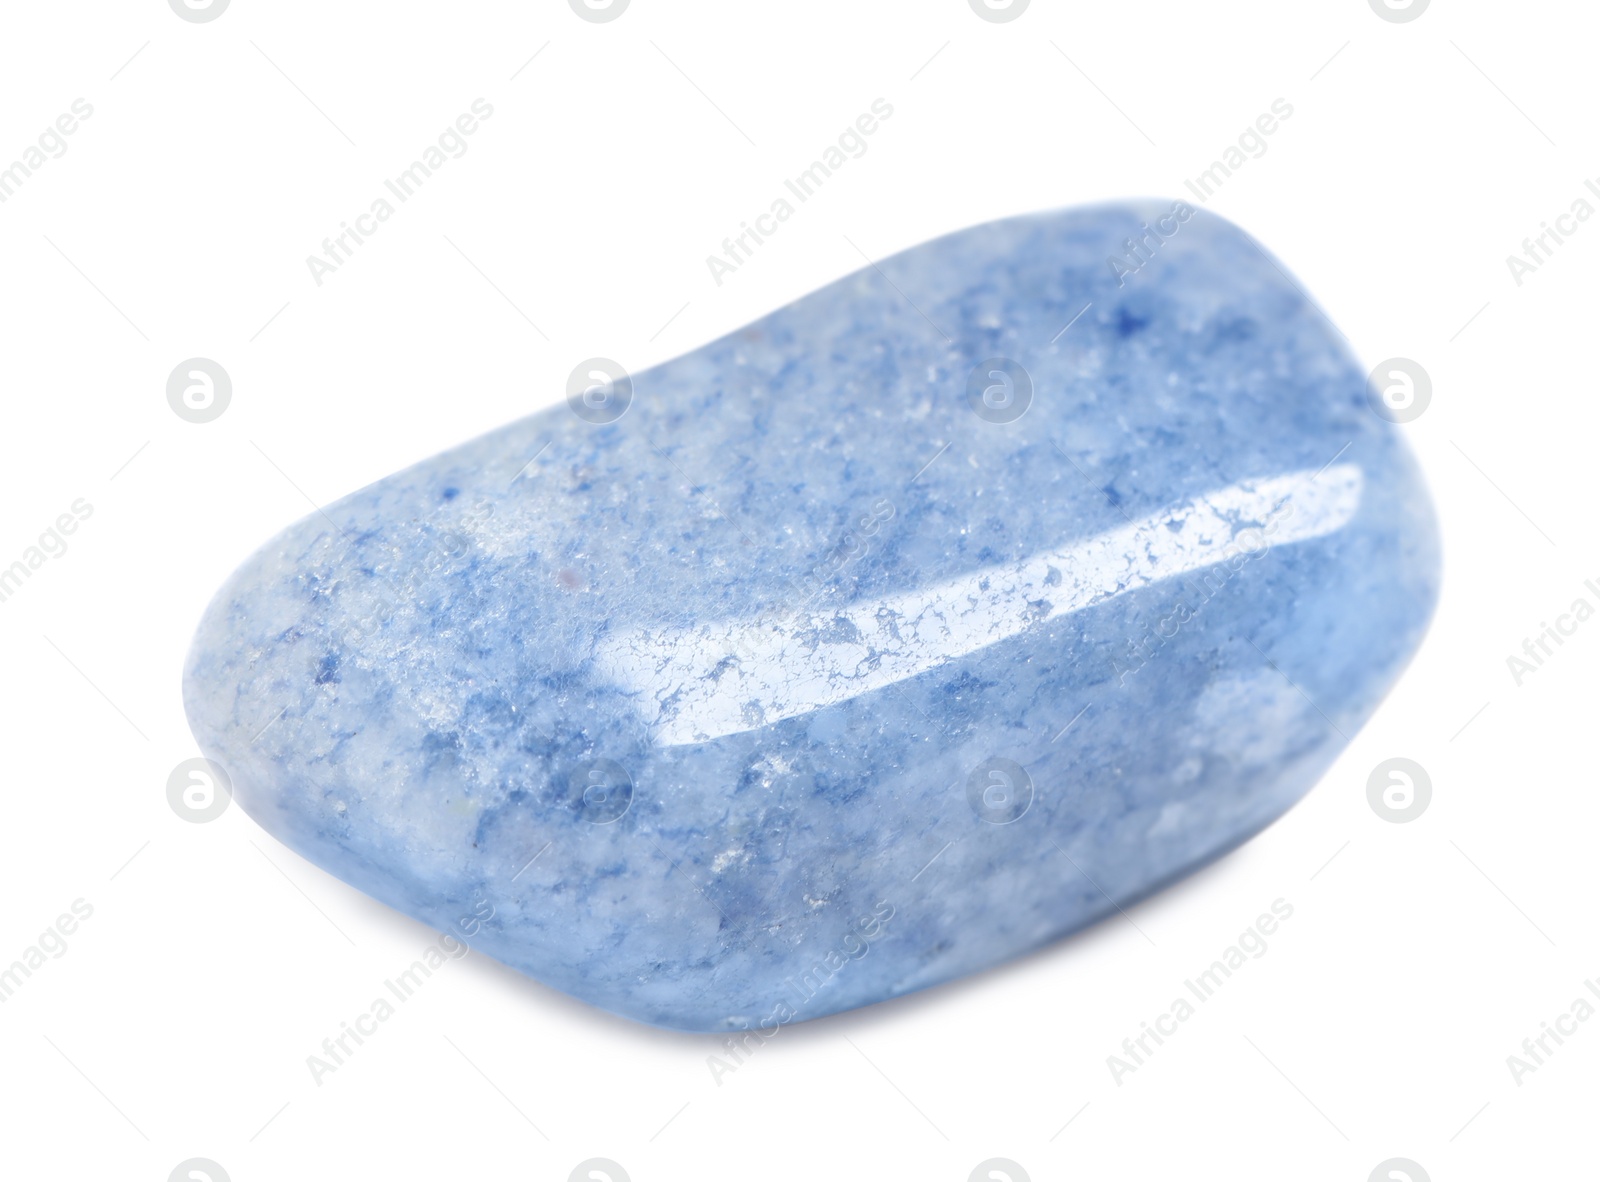 Photo of Beautiful blue quartz gemstone on white background